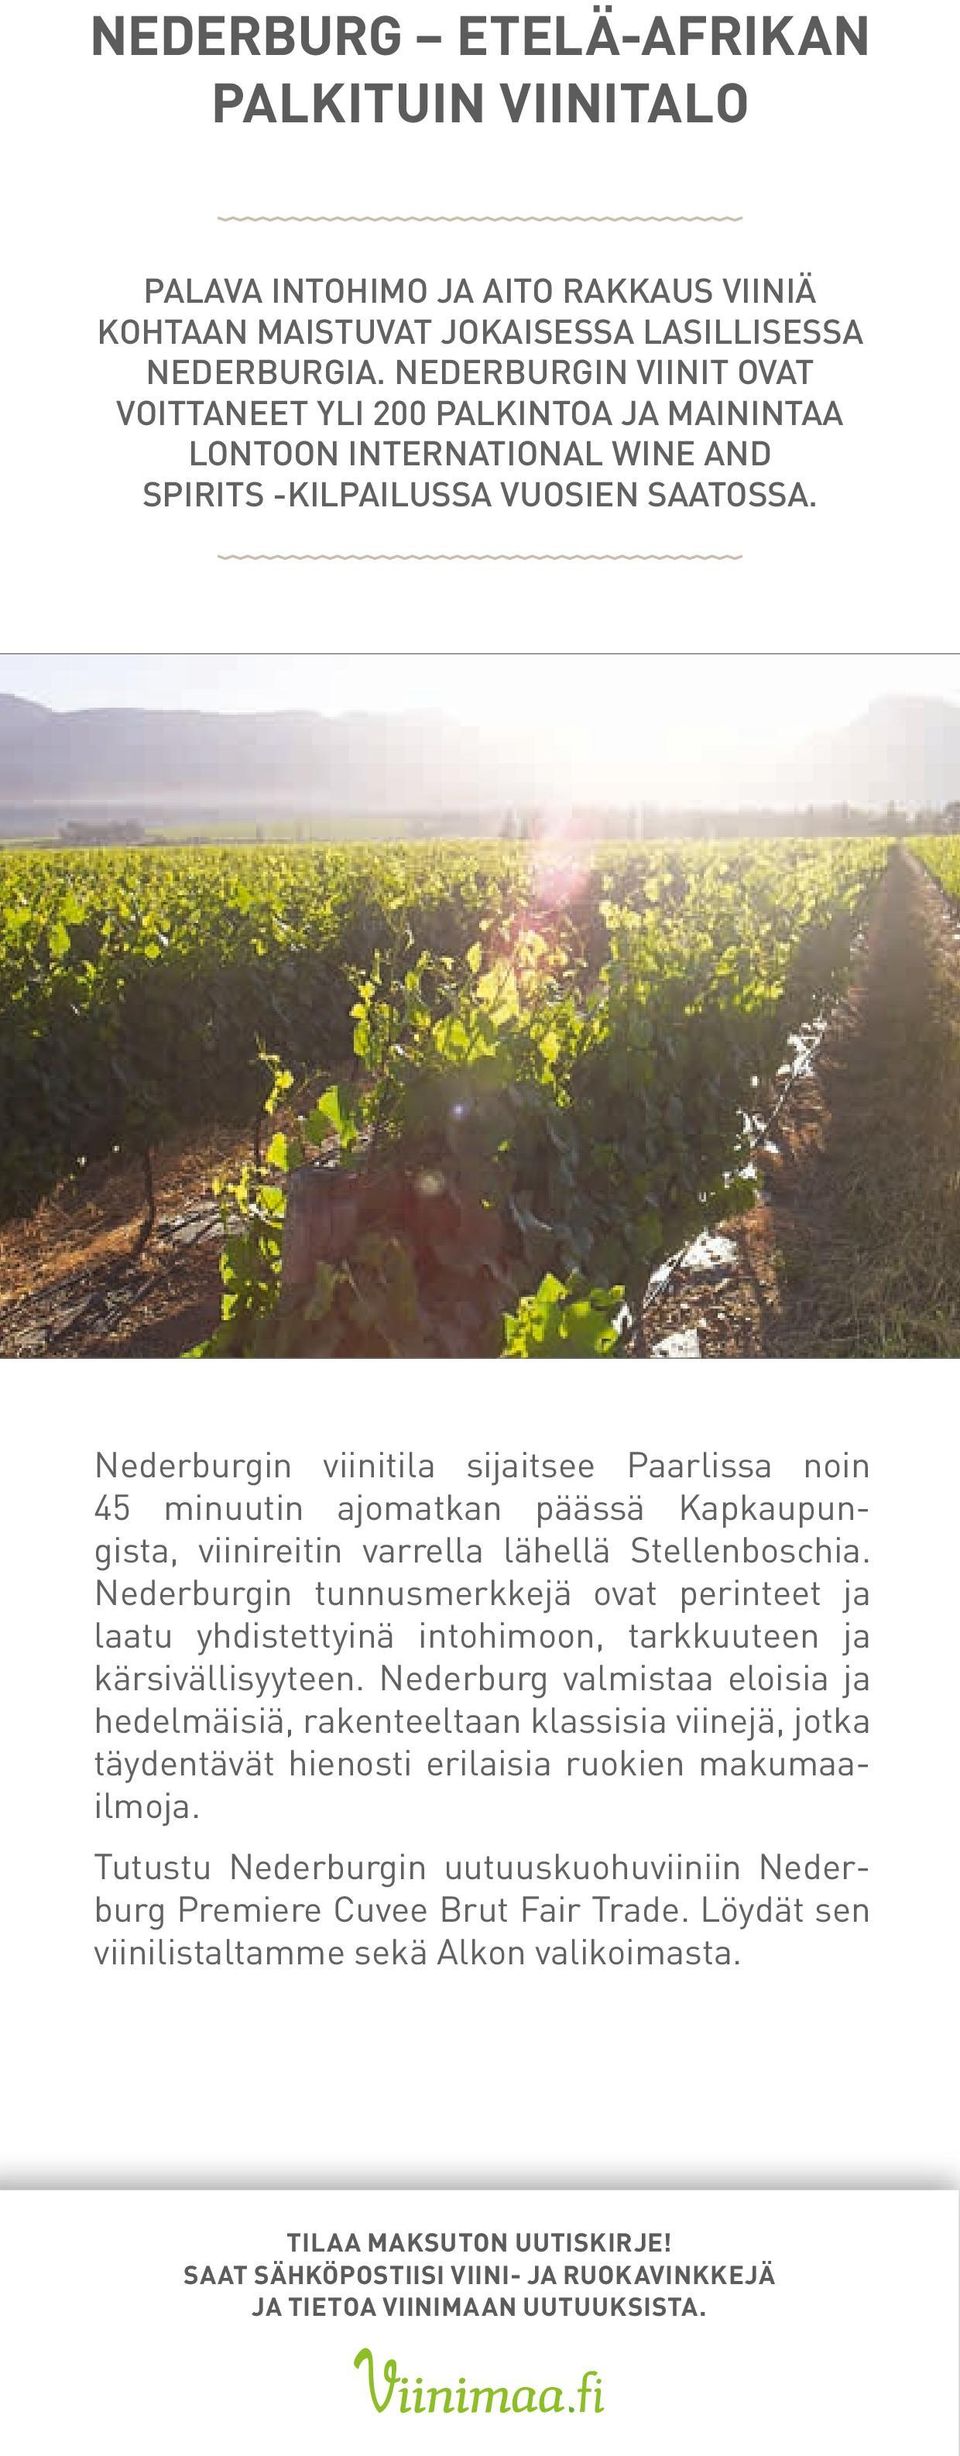 Nederburgin viinitila sijaitsee Paarlissa noin 45 minuutin ajomatkan päässä Kapkaupungista, viinireitin varrella lähellä Stellenboschia.